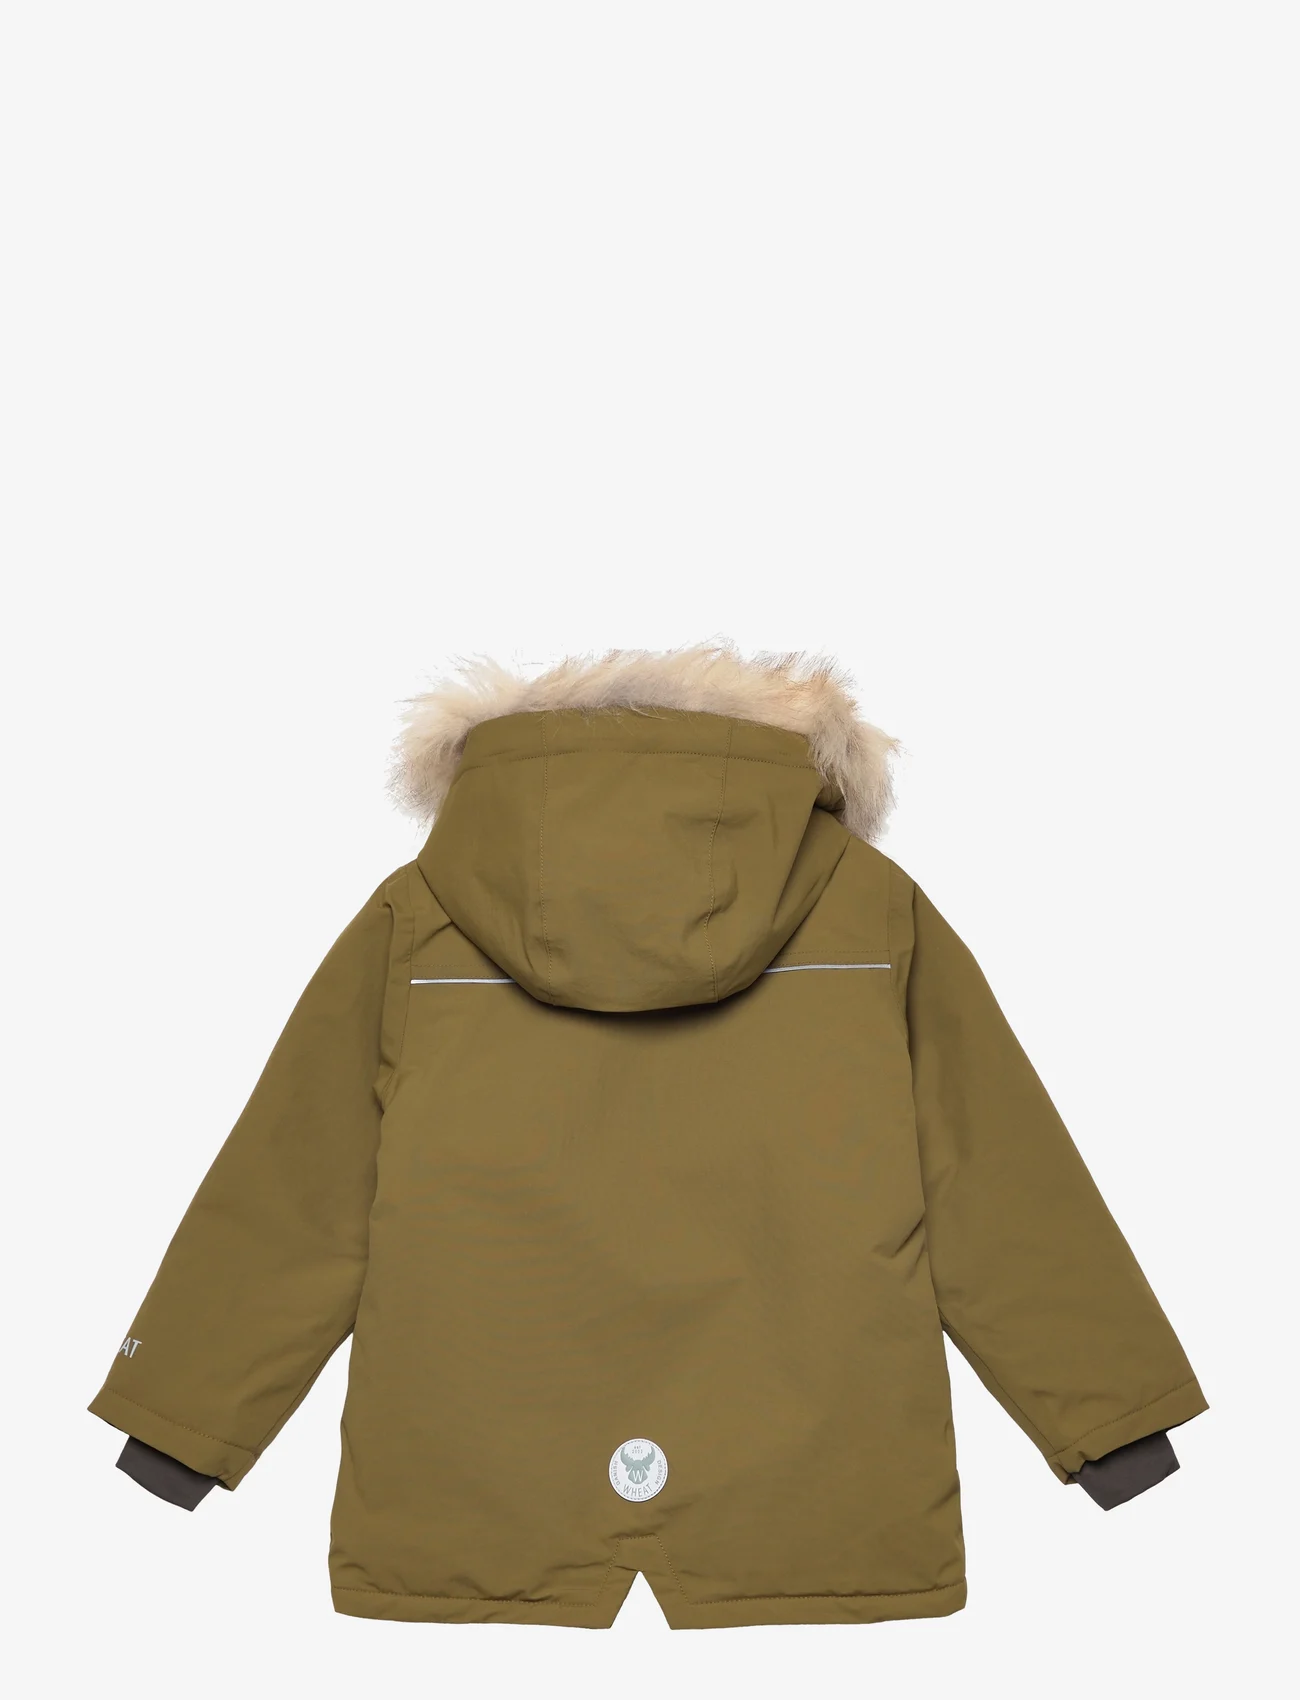 Wheat - Jacket Kasper Tech - winter jackets - dry moss - 1